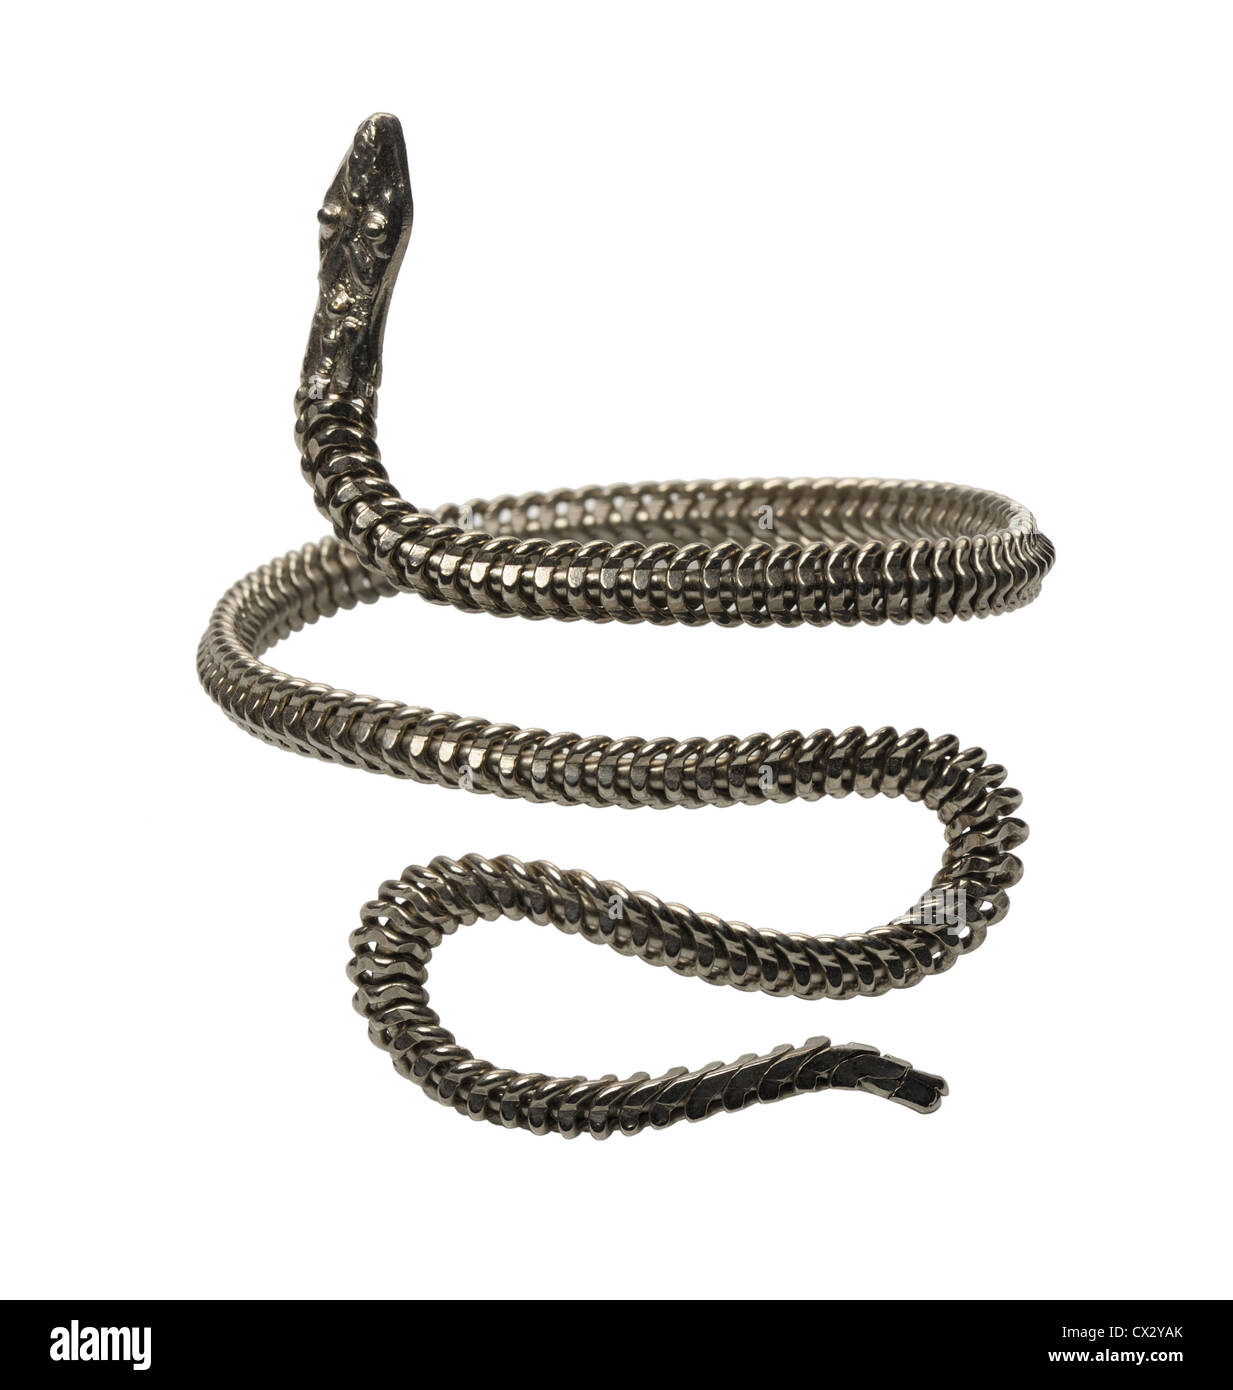 Bracelet métal tressé en forme de serpents, isolé sur fond blanc Banque D'Images